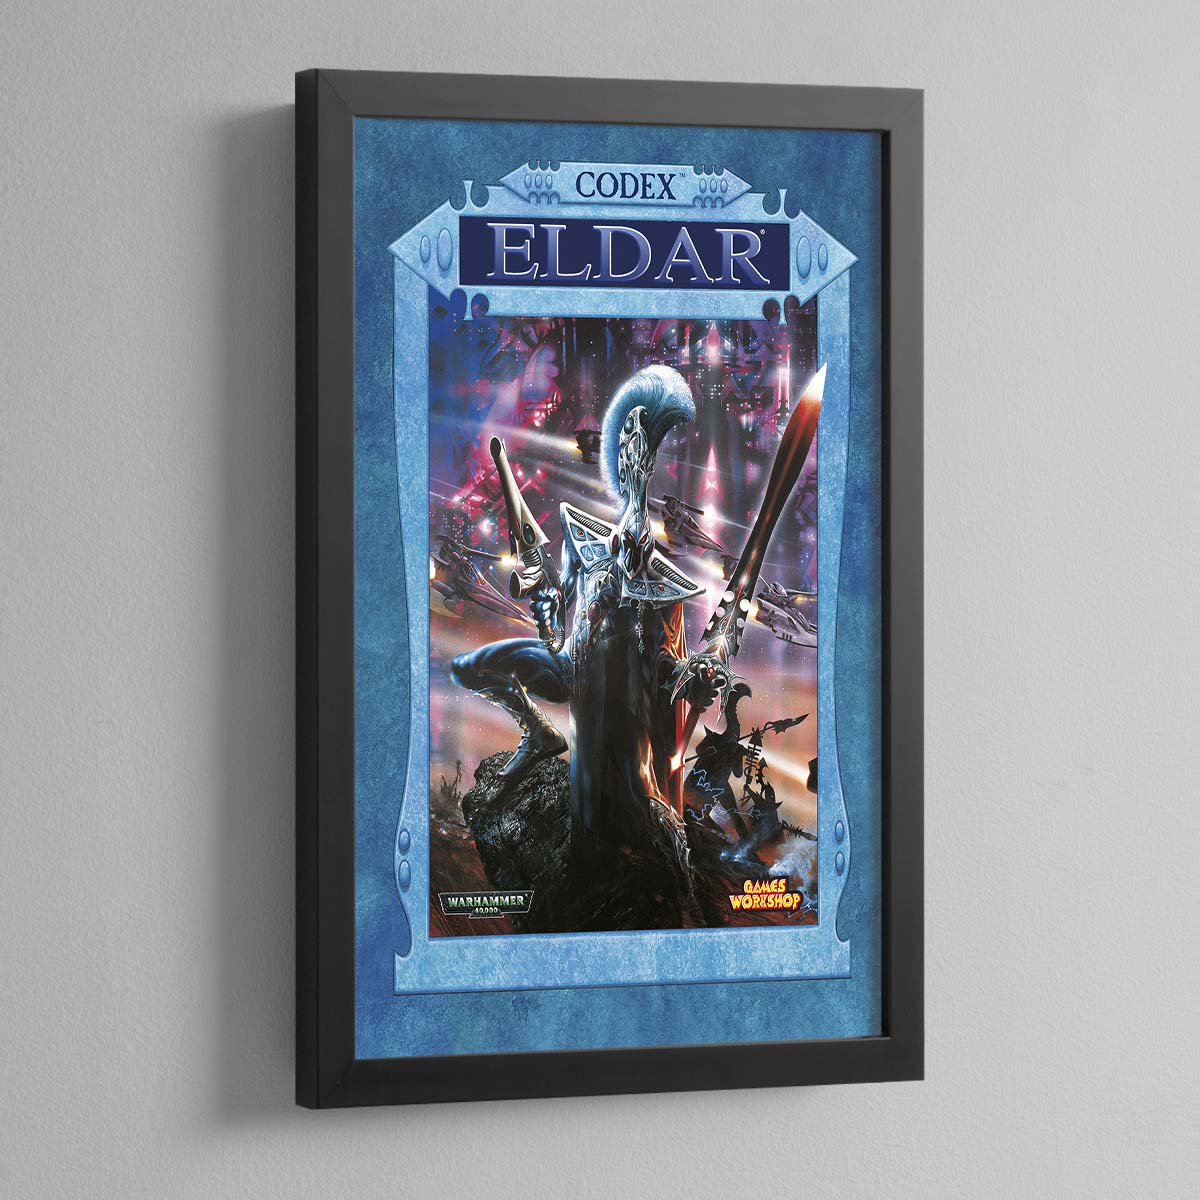 Warhammer 40,000 3rd Edition – Eldar – Frame